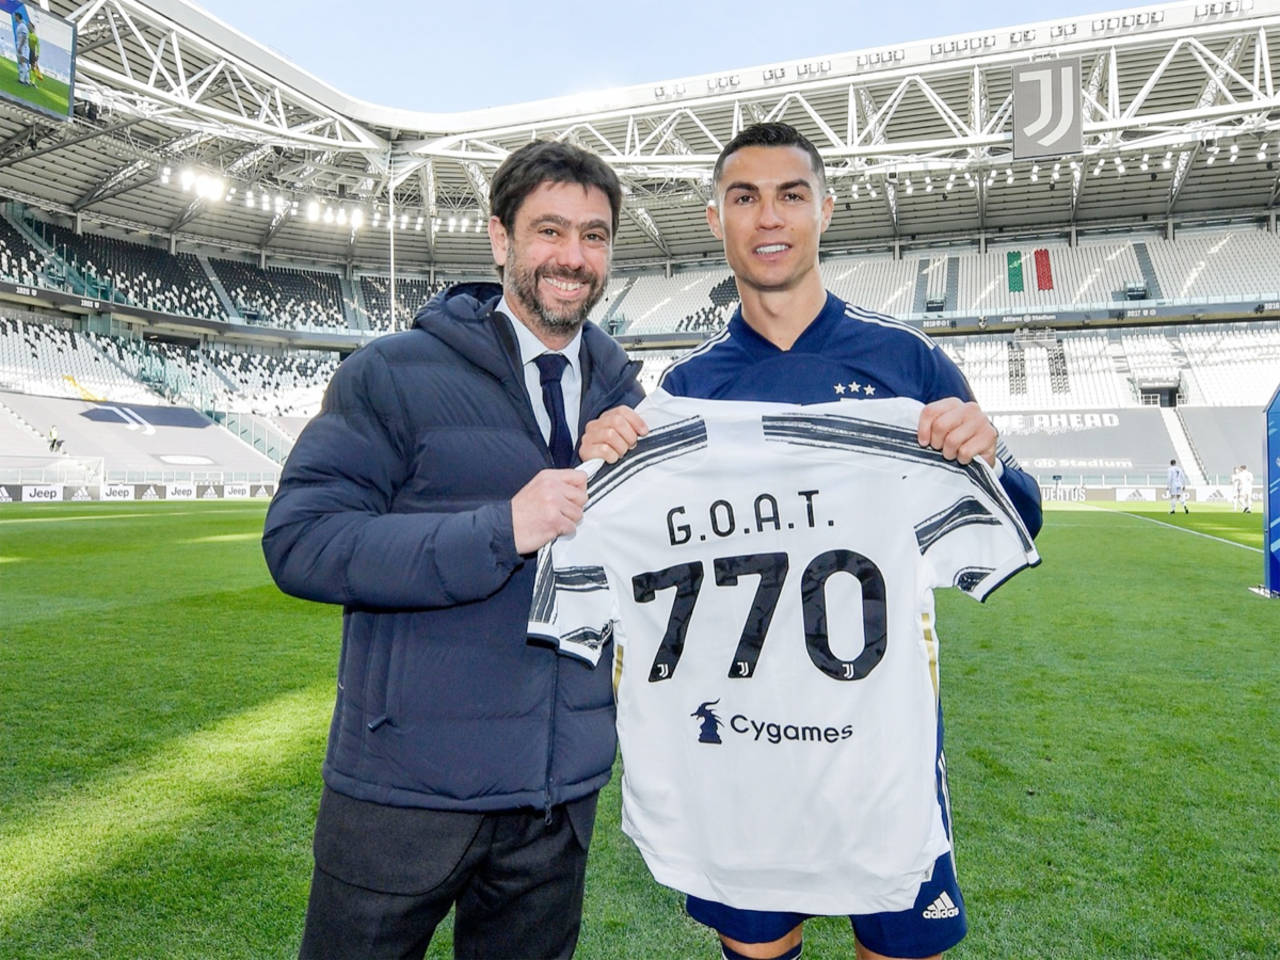 Juventus award Ronaldo 'GOAT 770' shirt to celebrate landmark